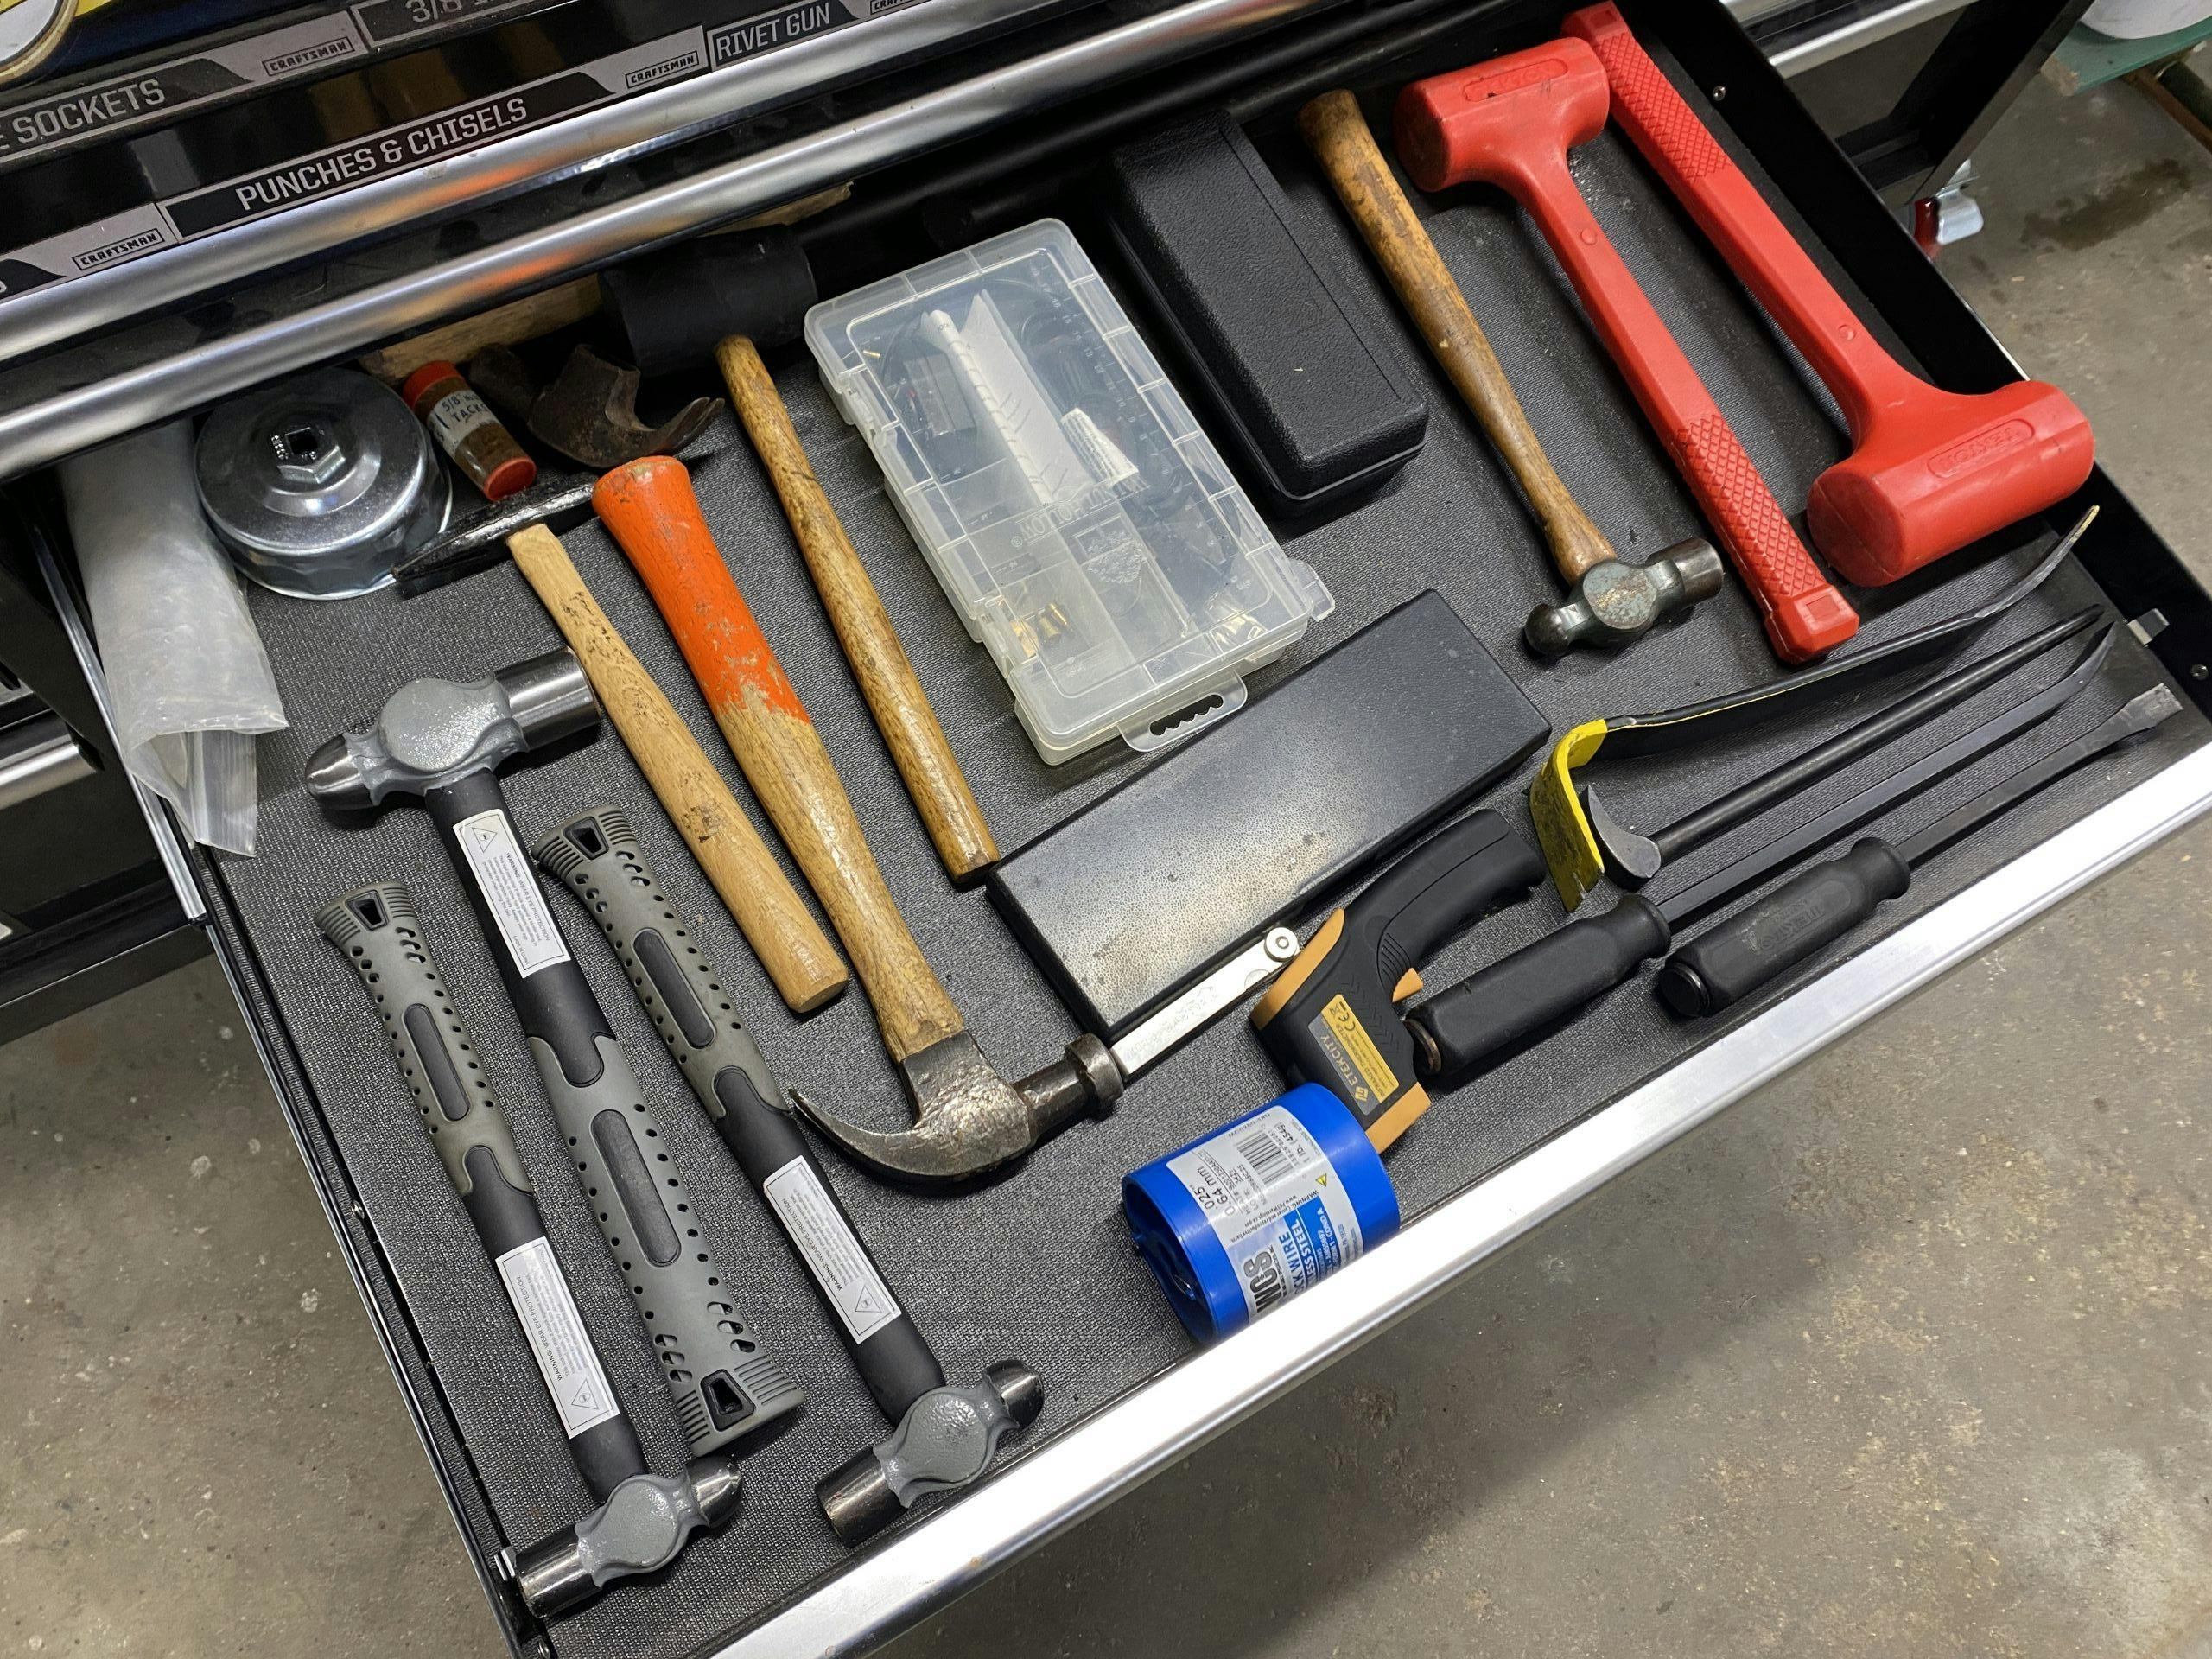 drawer full of hammers